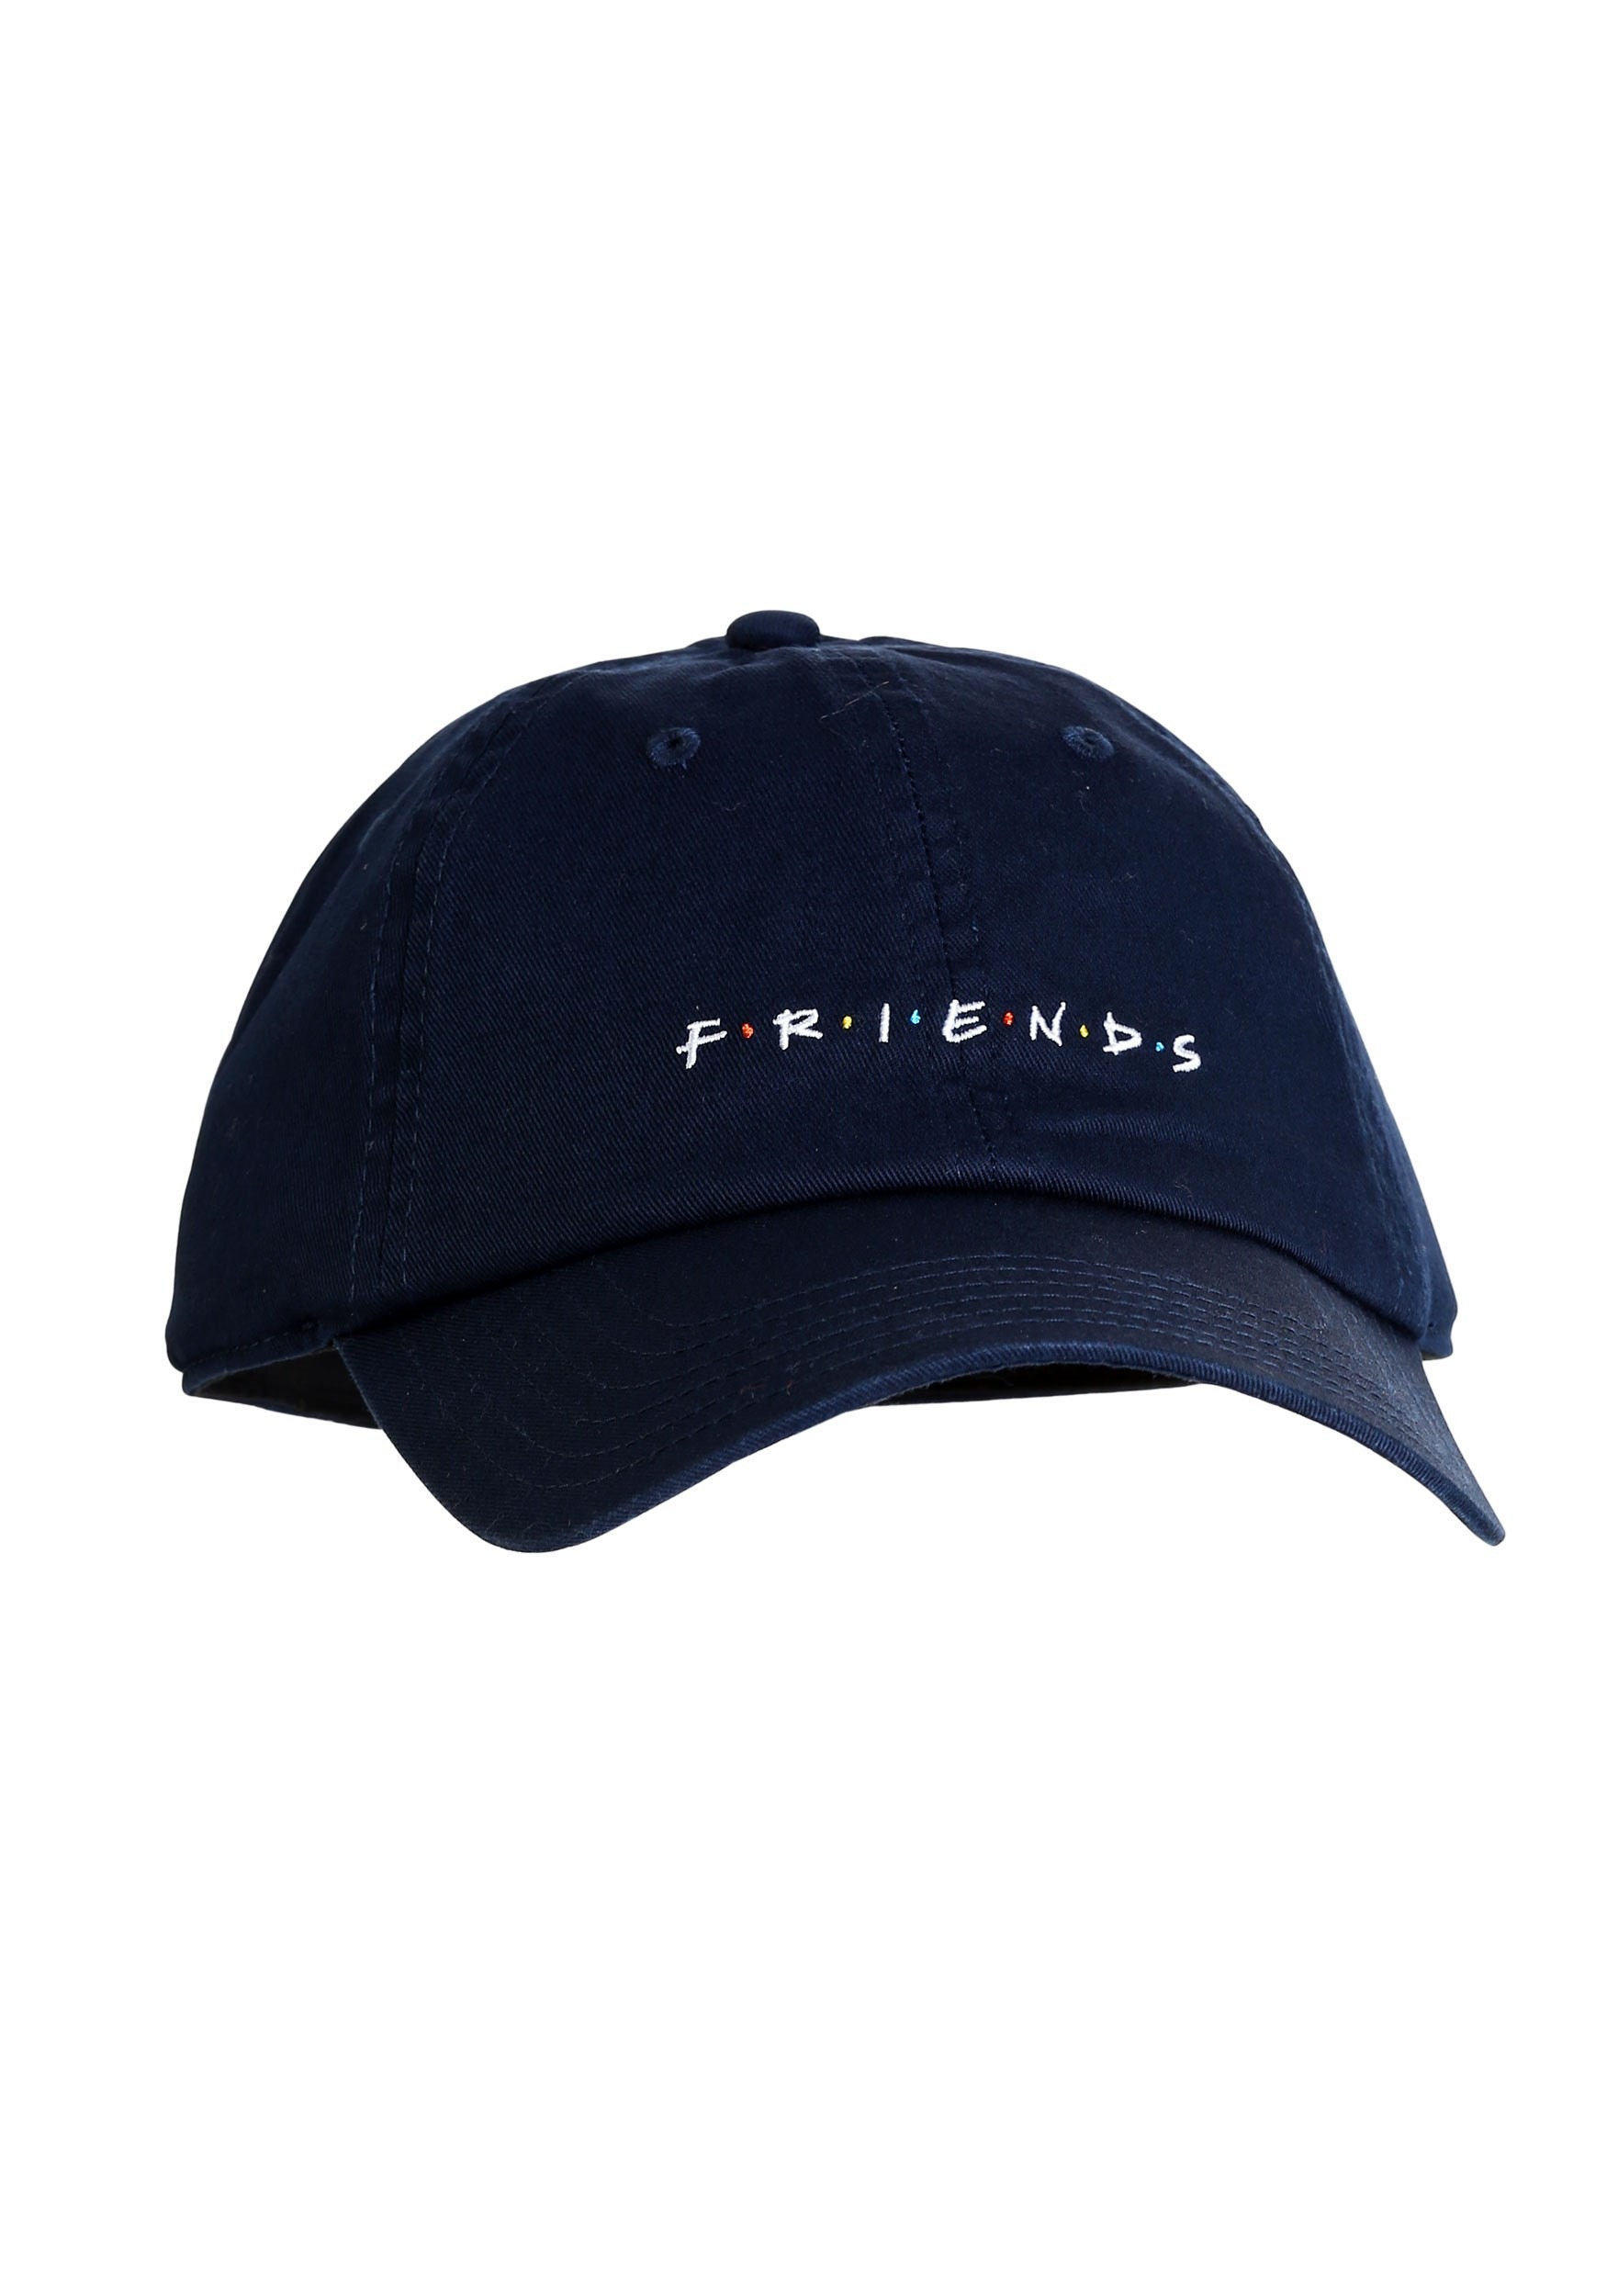 Friends Dad Hat